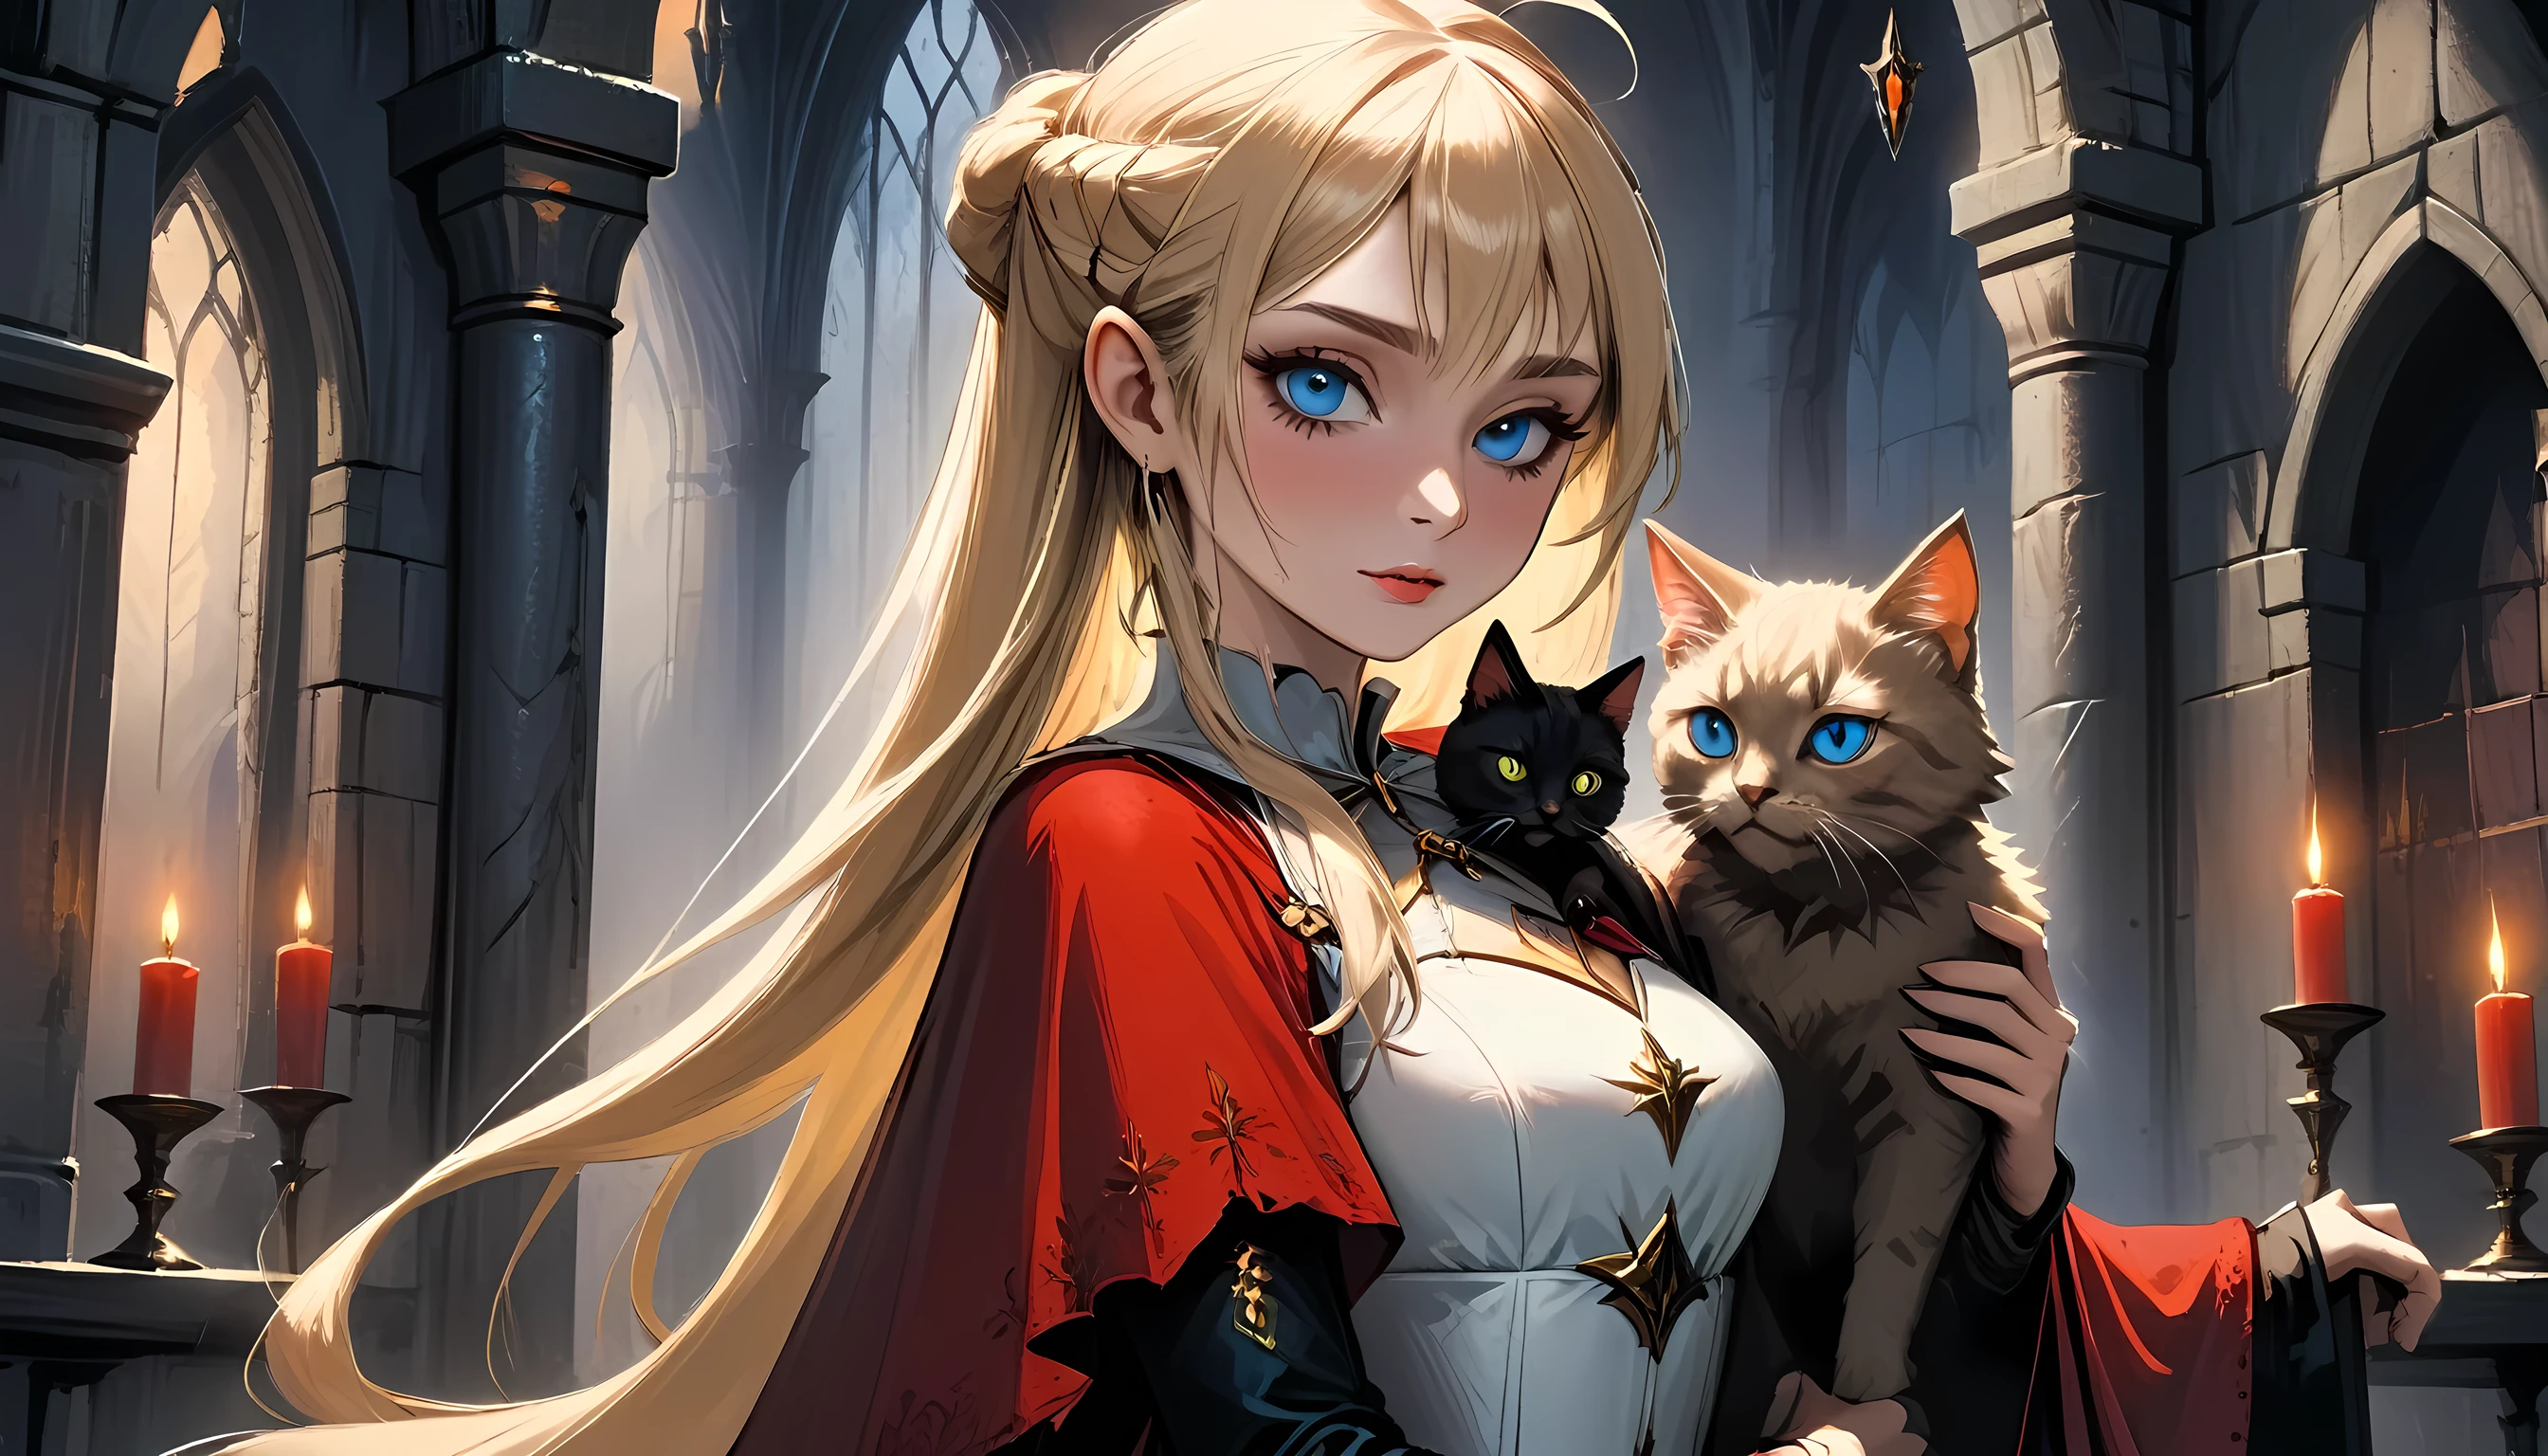 Arafed ein Bild von Elf Vampir in ihrem Schloss und ihre Haustier epische Katze eine exquisite schöne weibliche Elf Vampir (ultra details, Meisterwerk, beste Qualität), blutiger Mund, blonde Haare, blasse Haut, Haare in einem Pferdeschwanz, lange Haare, blaue Augen, Kalte Augen, grinsend, trägt weißes Kleid (ultra details, Meisterwerk, beste Qualität), Roter Umhang, in der Dark Fantasy Bibliothek, mit einem ((Große Katze: 1.3)) (ultra details, Meisterwerk, beste Qualität: 1.5) Bücherregale, Arafed hohe Details, beste Qualität, 16k, [Extrem detailliert], Meisterwerk, beste Qualität, (Extrem detailliert), Ganzkörper, Ultraweite Aufnahme, Fotorealismus, roh, Dunkle Fantasy-Kunst, gotische Kunst, Gepanzertes Kleid, dunkler Roman, Malstil der dunklen Kunst